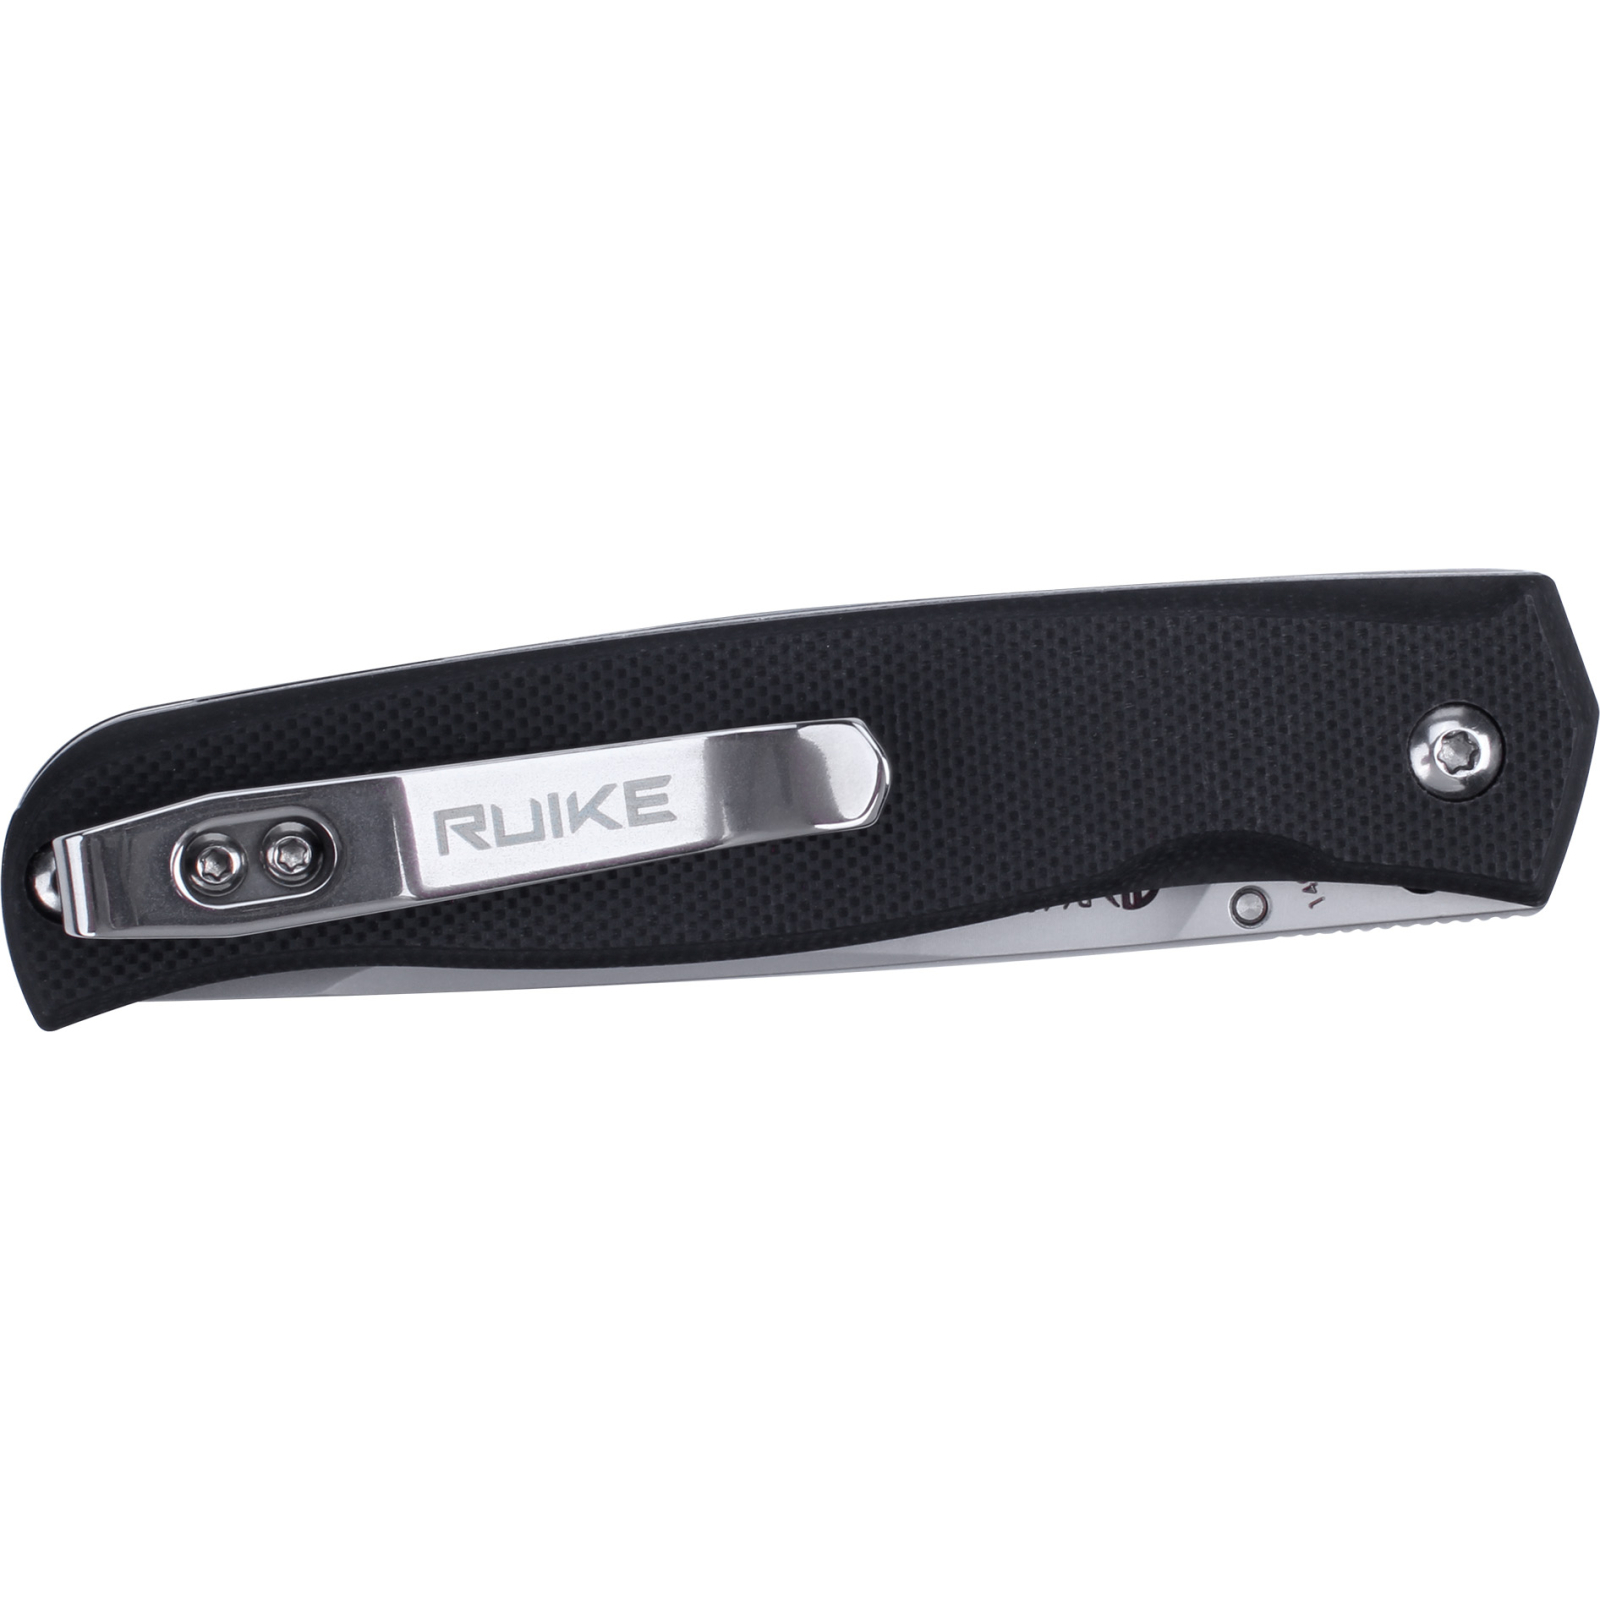 Нож Ruike P661-B изображение 2